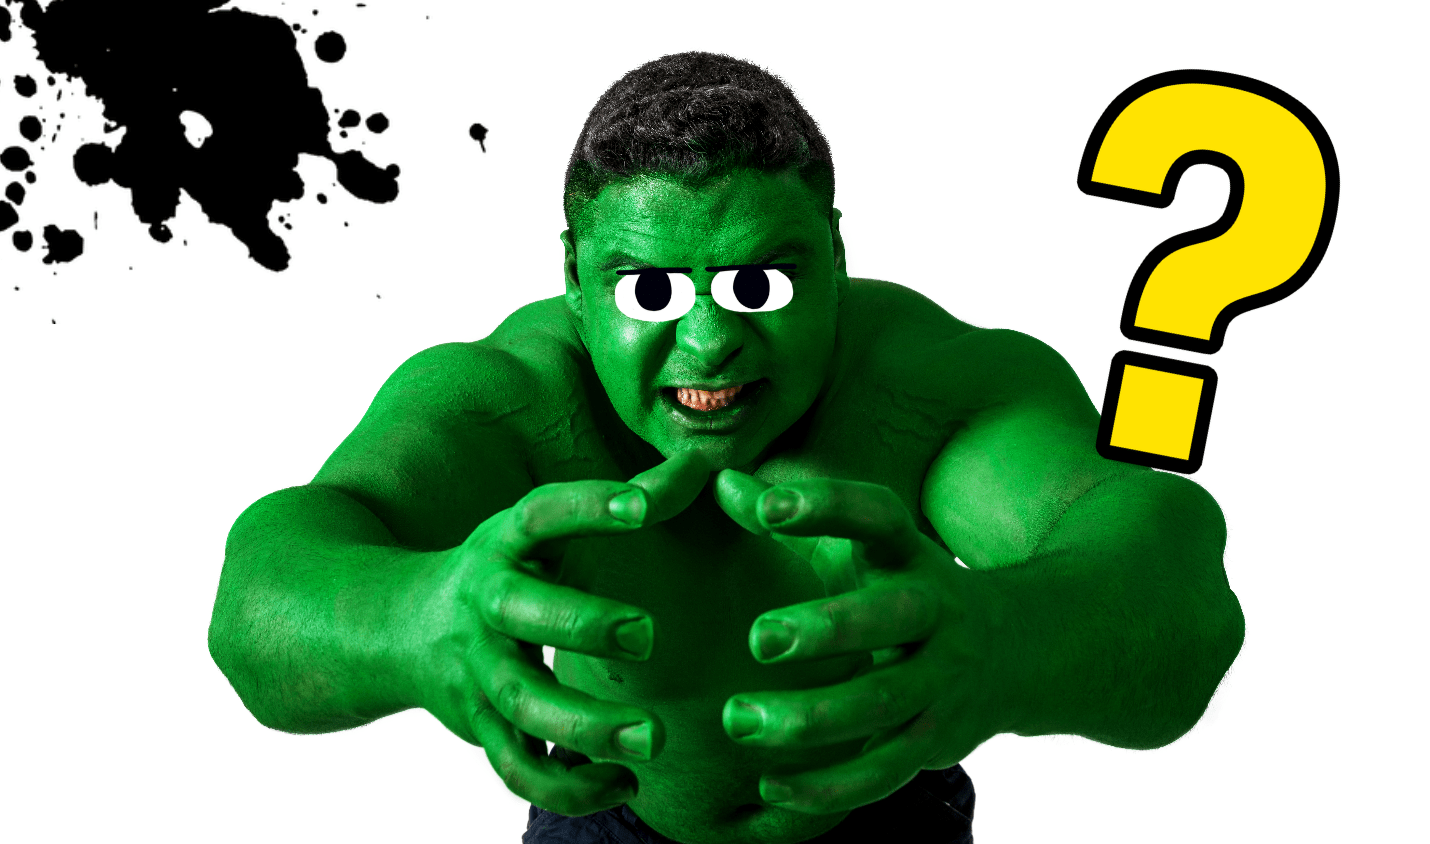 A green superhero